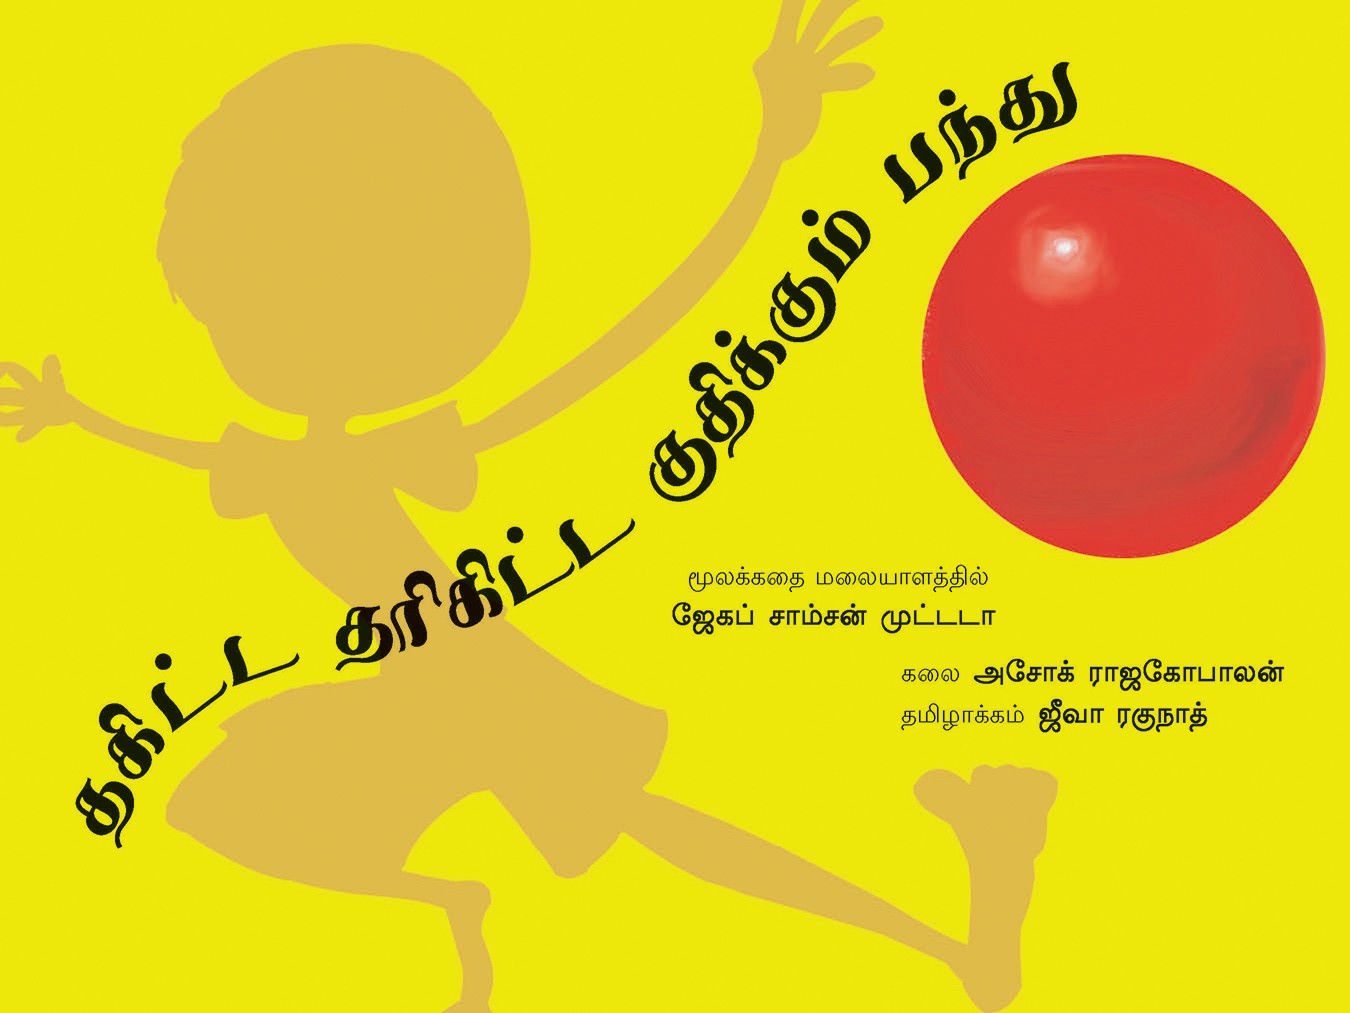 Thakitta Tharikitta Bouncing Ball/Thakitta Tharikitta Gudhikkum Pandhu (Tamil)